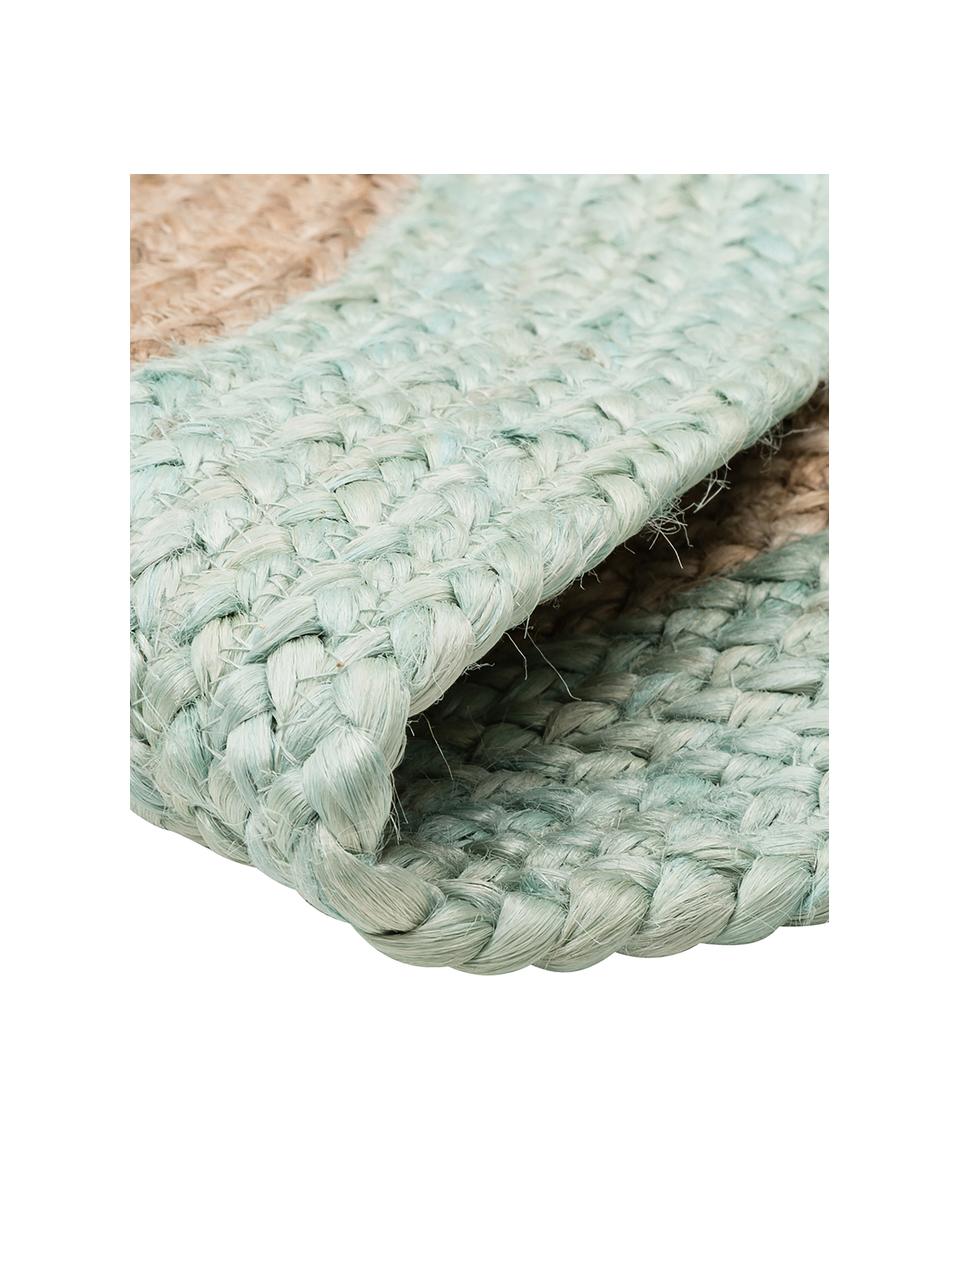 Okrągły ręcznie wykonany dywan z juty Shanta, 100% juta

Ponieważ dywany z juty są szorstkie, są mniej odpowiednie do bezpośredniego kontaktu ze skórą, Beżowy, zielony miętowy, Ø 200 cm (Rozmiar L)